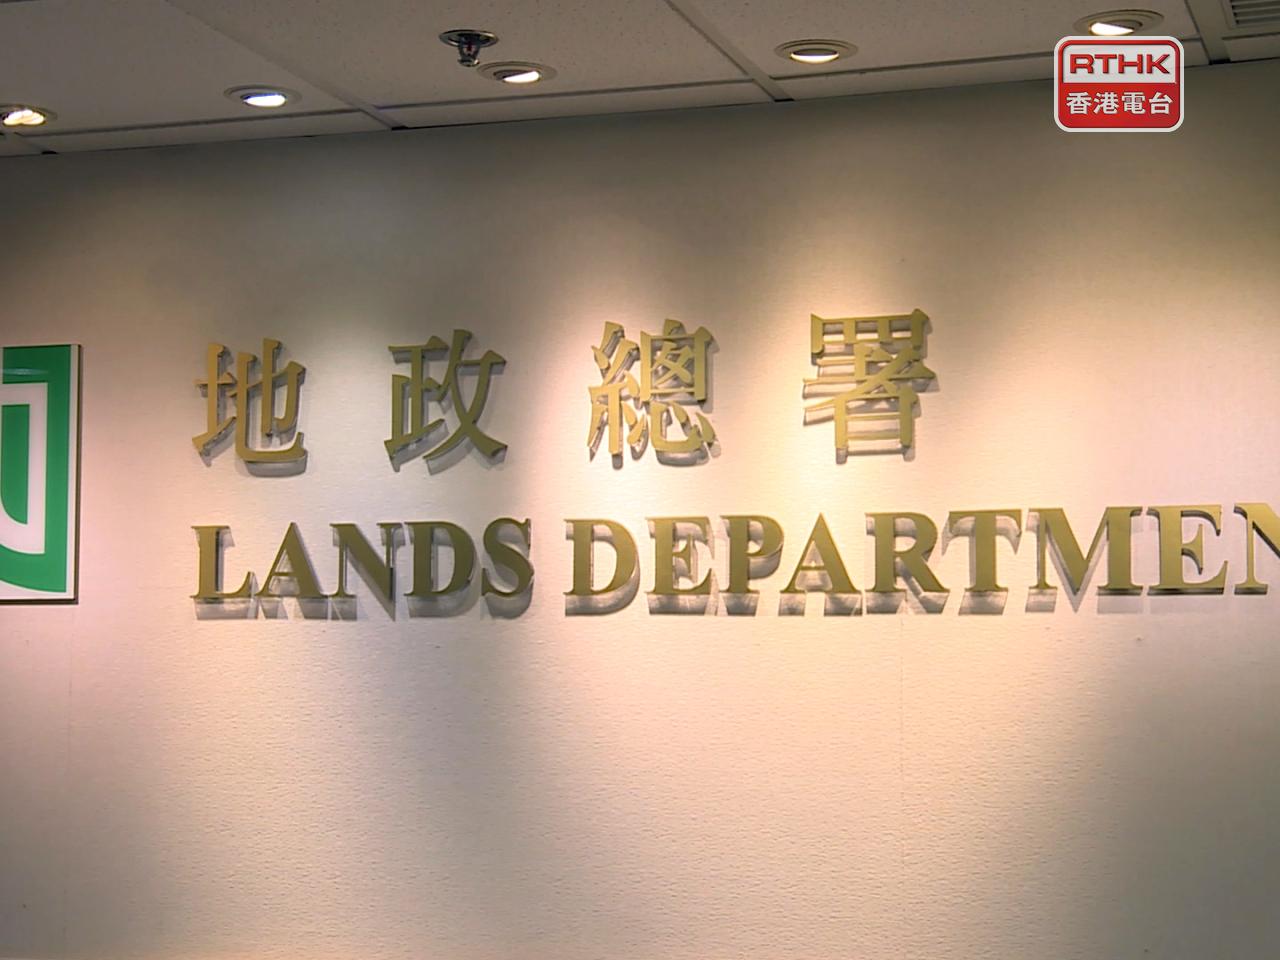 Tender for Chai Wan residential site fails: govt